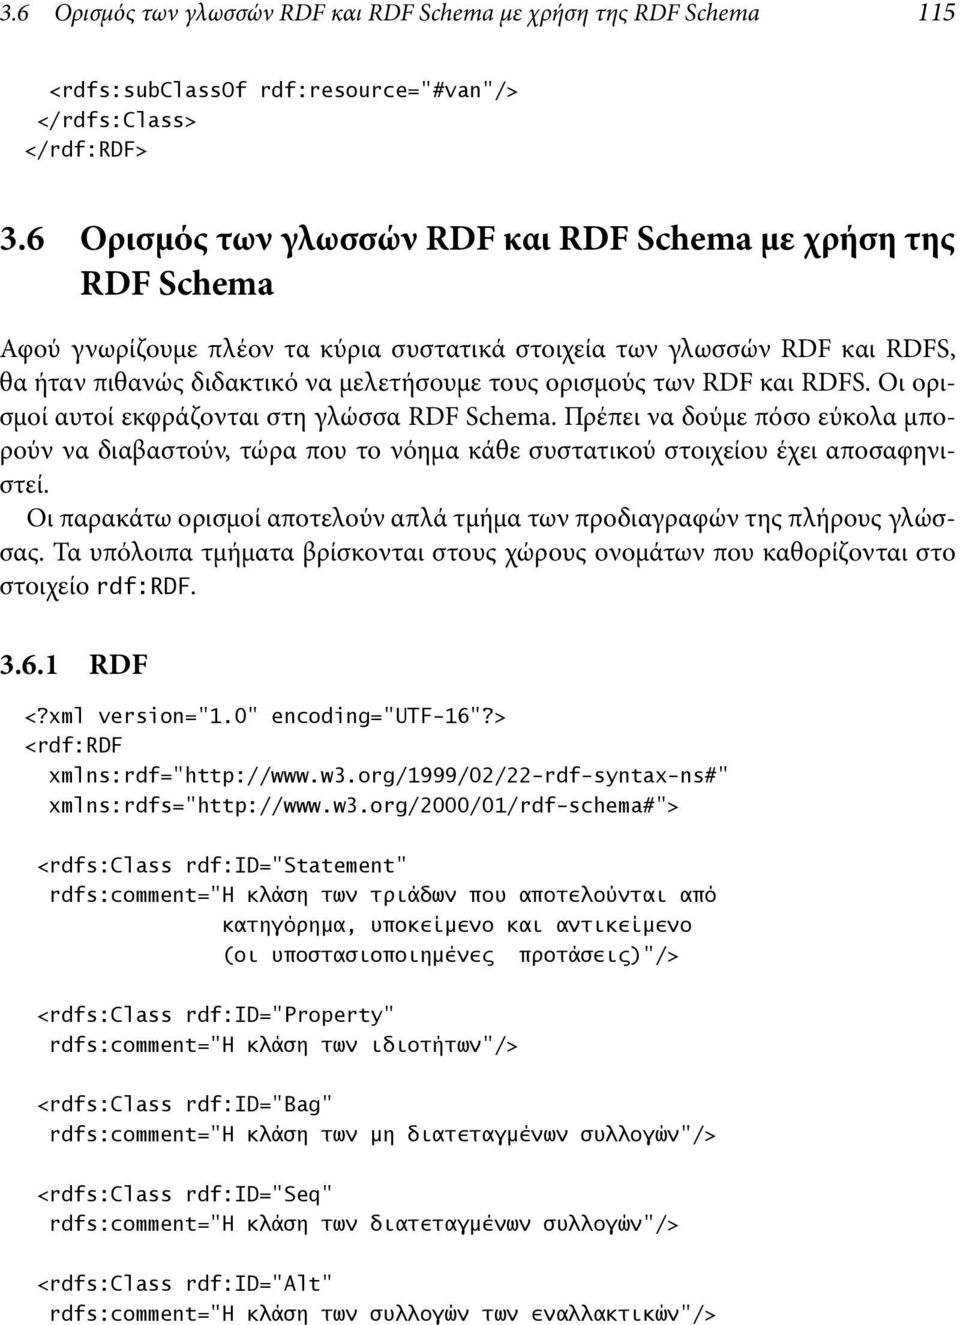 RDF και RDFS. Οι ορισμοί αυτοί εκφράζονται στη γλώσσα RDF Schema. Πρέπει να δούμε πόσο εύκολα μπορούν να διαβαστούν, τώρα που το νόημα κάθε συστατικού στοιχείου έχει αποσαφηνιστεί.